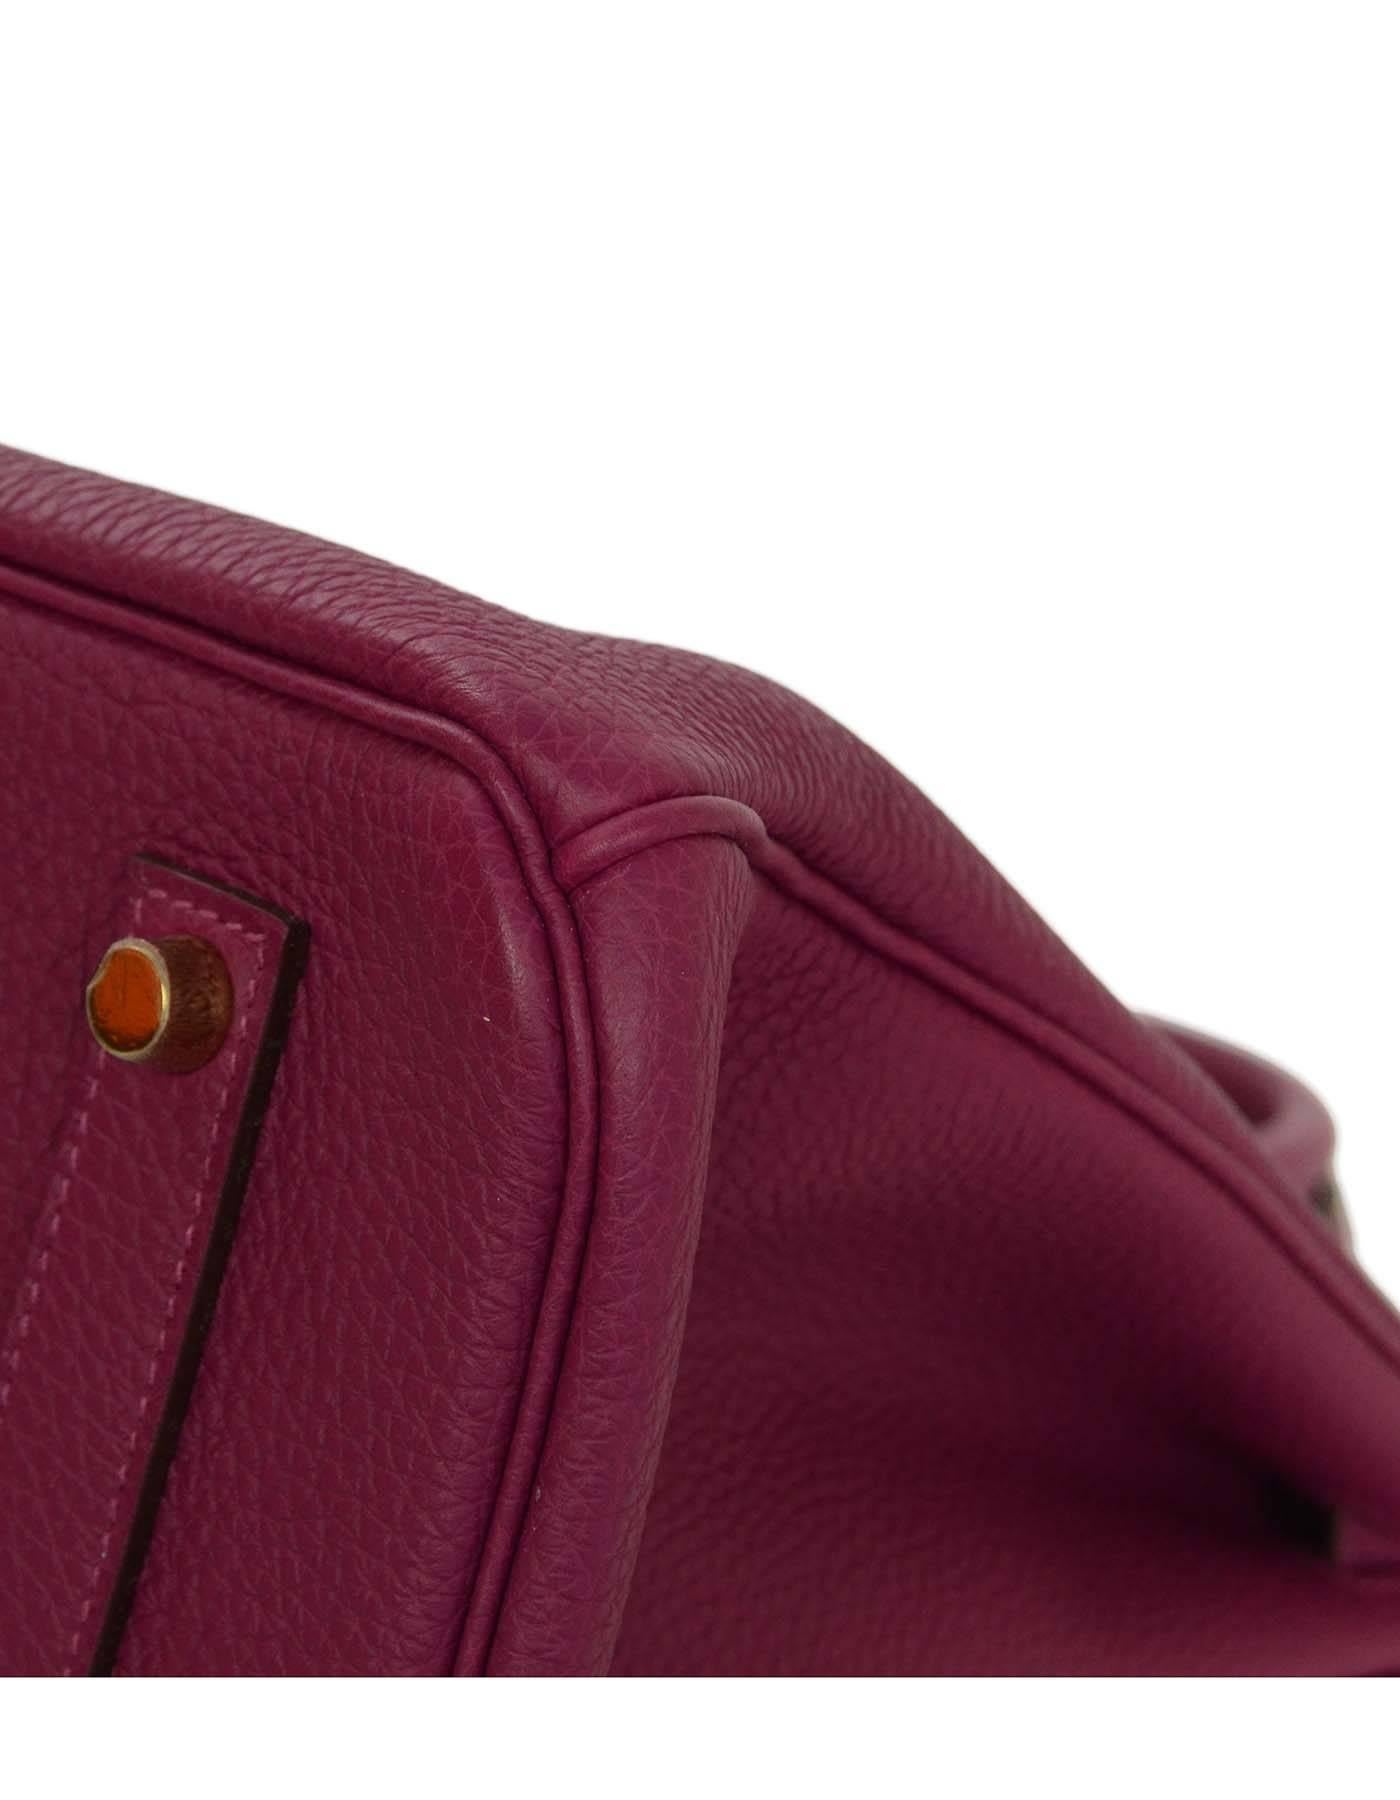 Brown Hermes LIKE NEW Violet Tosca Togo Leather 35cm Birkin Bag w/ Box